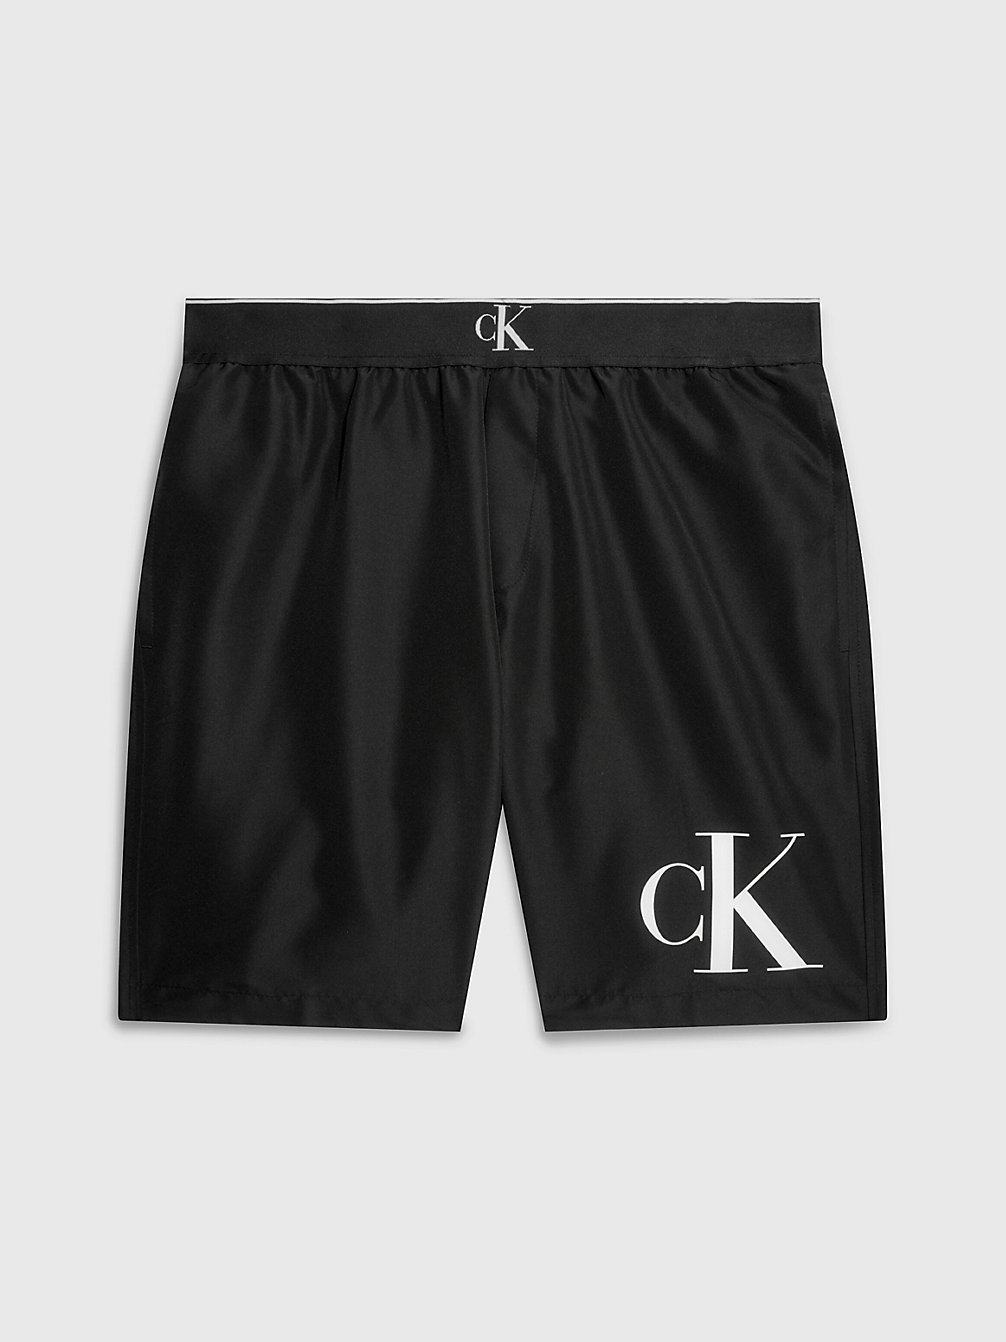 PVH BLACK Lange Badeshorts – CK Monogram undefined Herren Calvin Klein